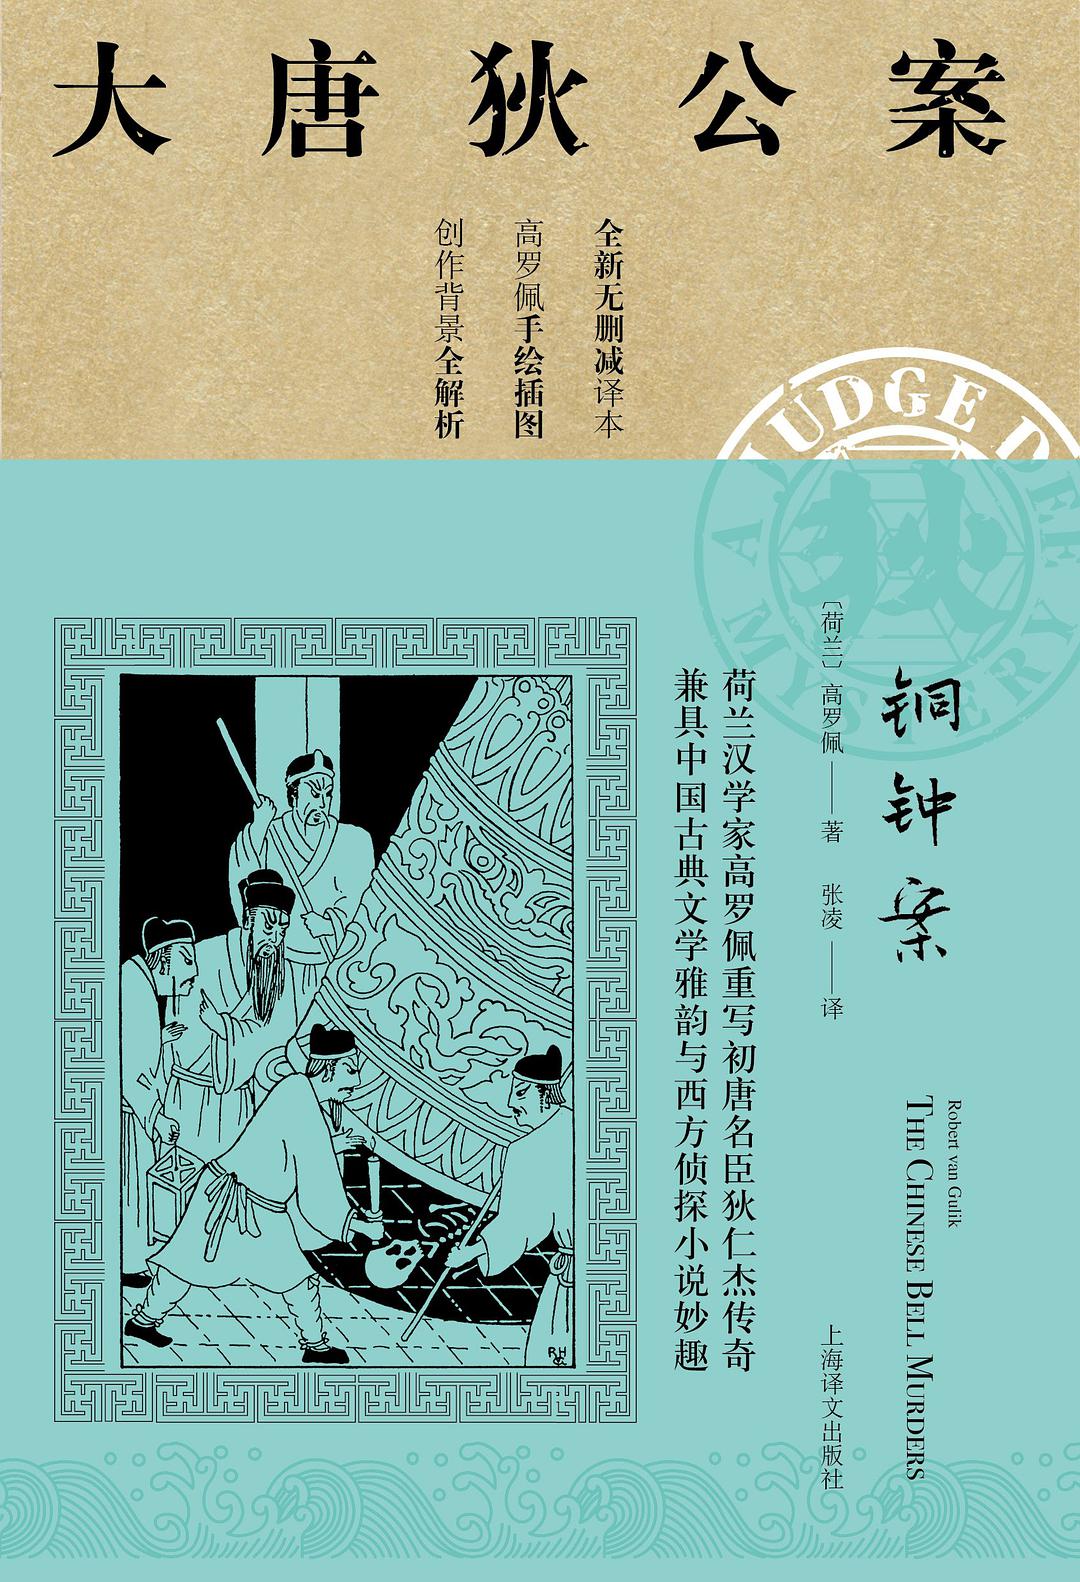 铜钟案 (Chinese language, 2019, 上海译文出版社)